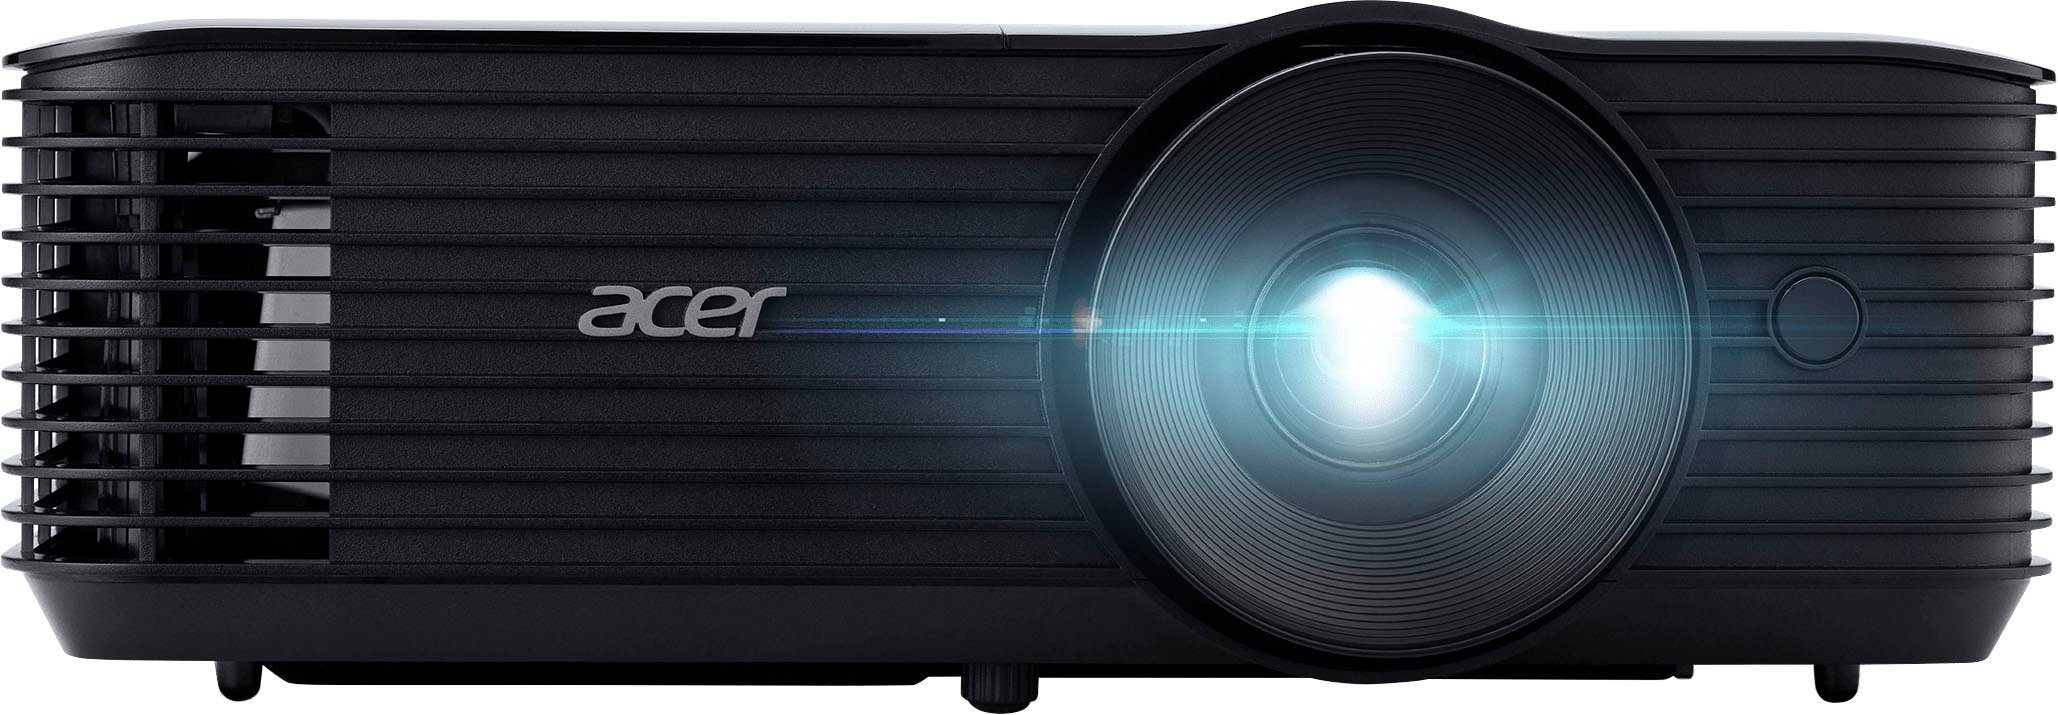 Acer X1228i Beamer (4500 lm, 20000:1, 1024 x 768 px)